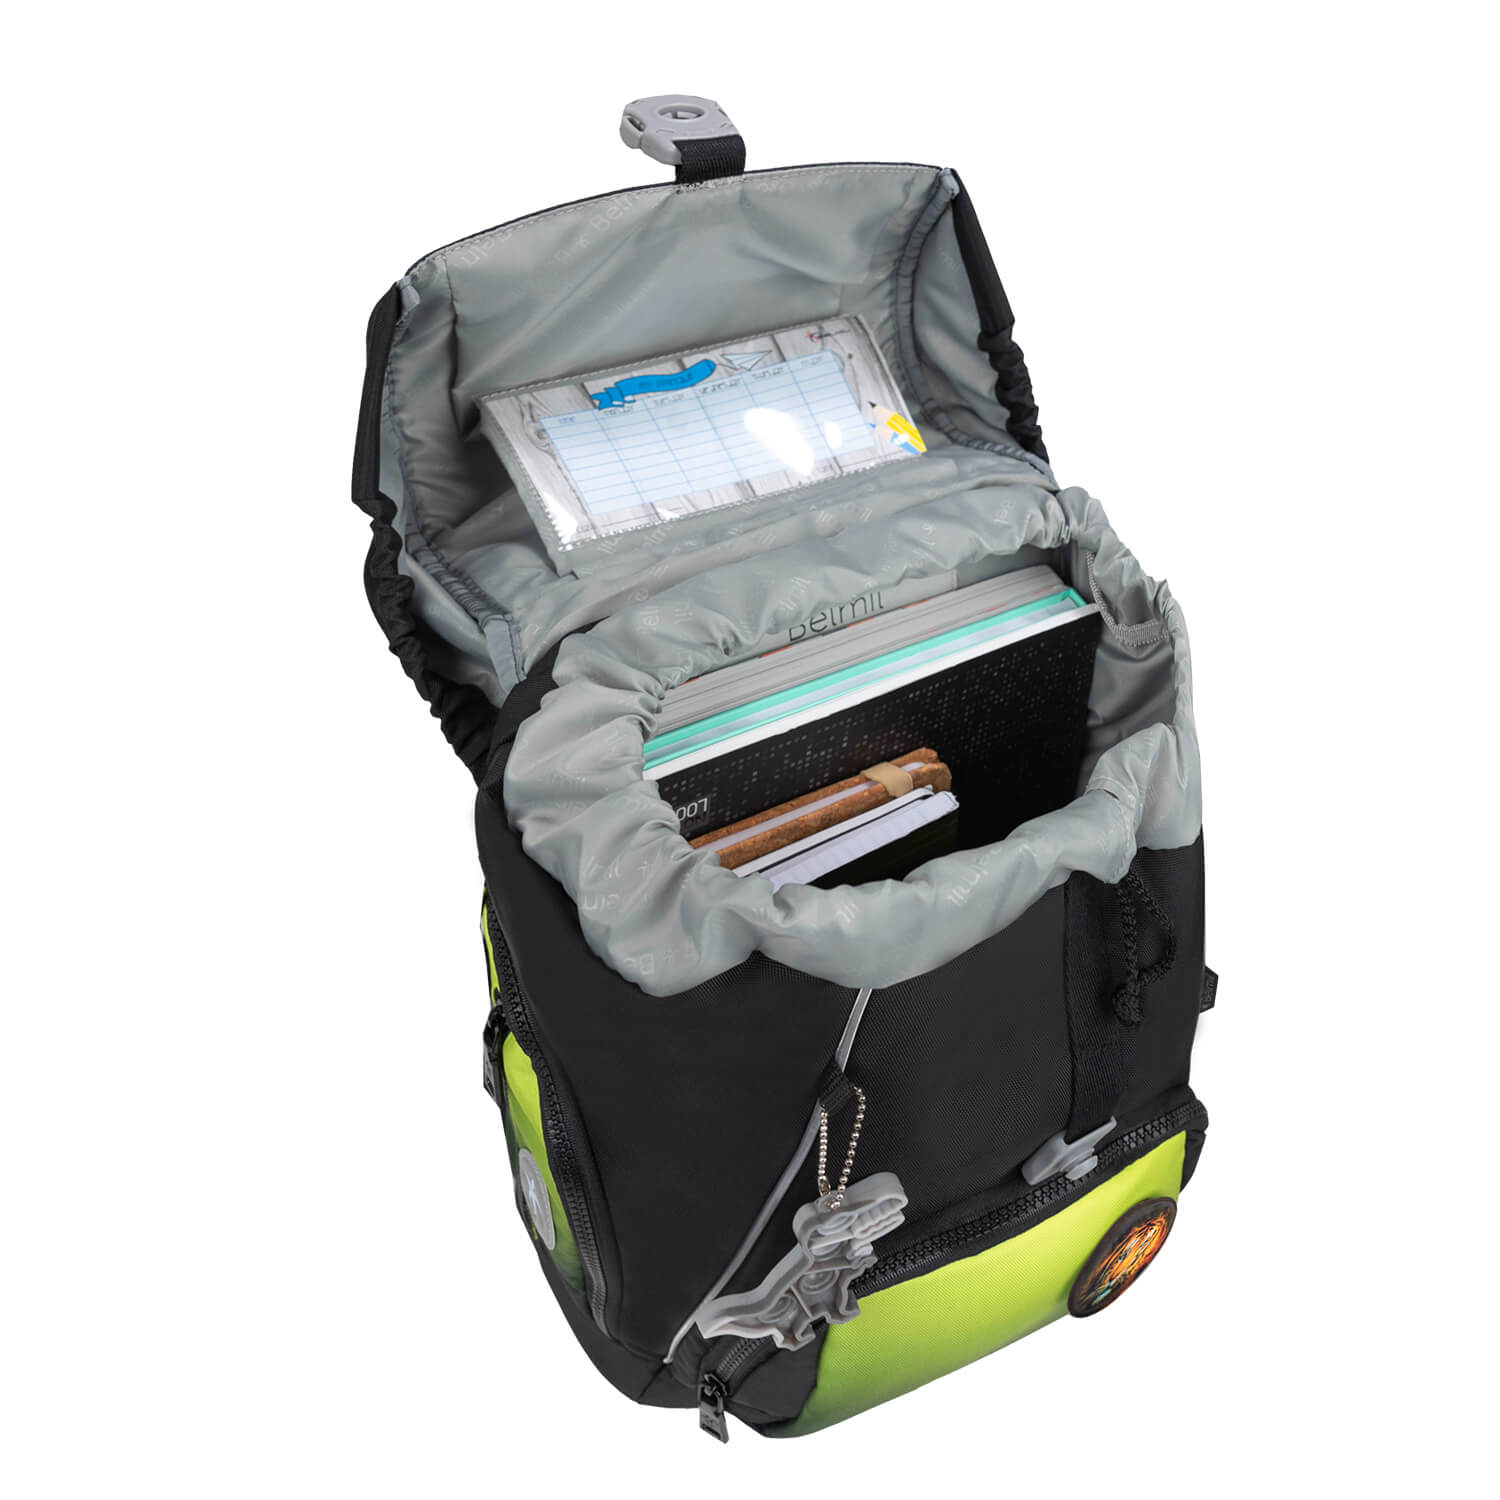 Premium Comfy Plus Black Green Schoolbag set 5pcs.